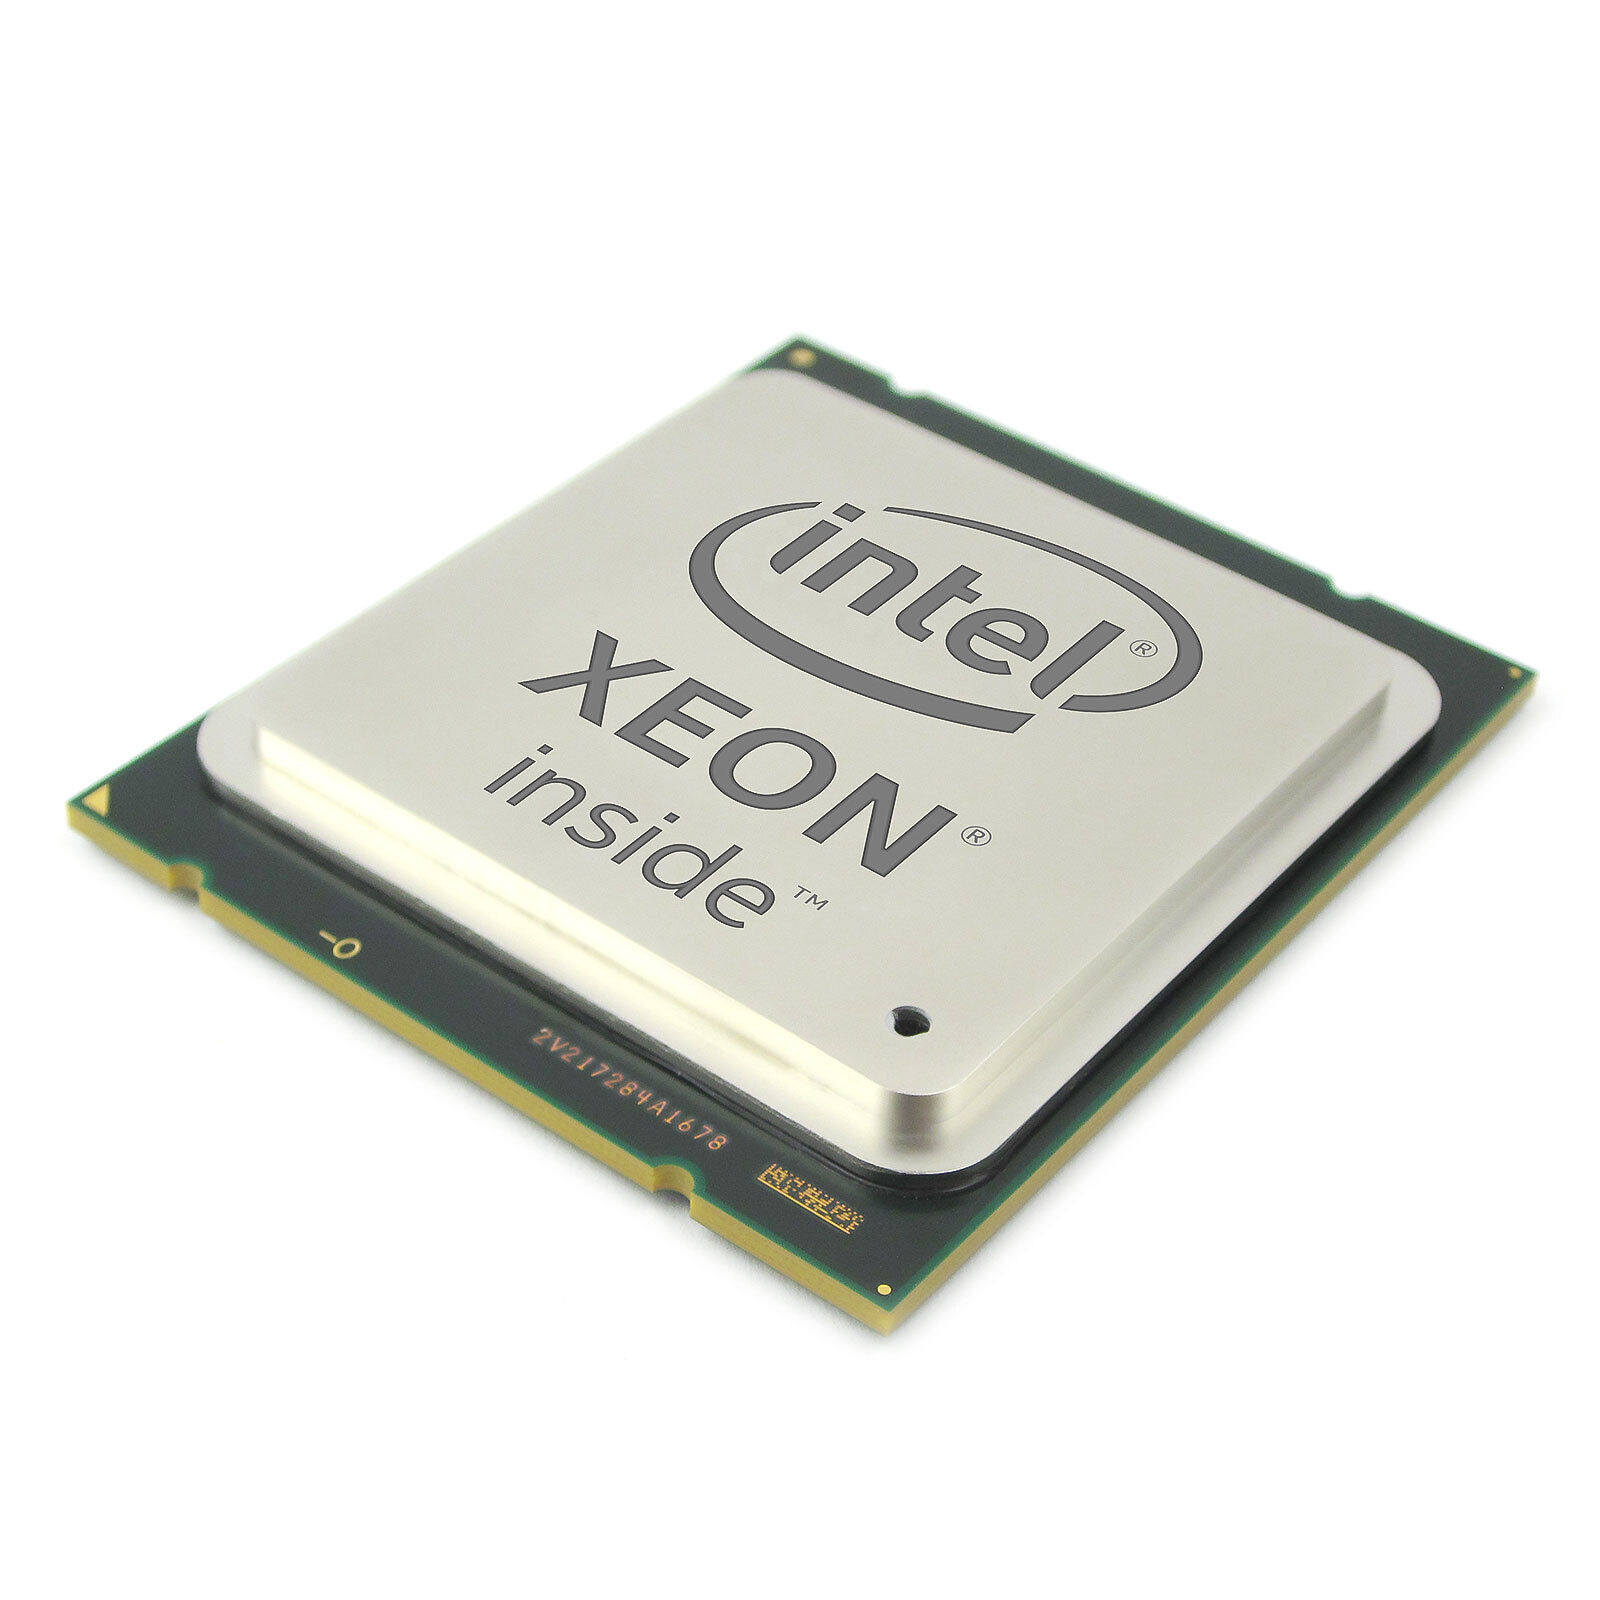 Intel Xeon E5-2630L 2.00GHz 6-Core LGA 2011 / Socket R Processor SR0KM